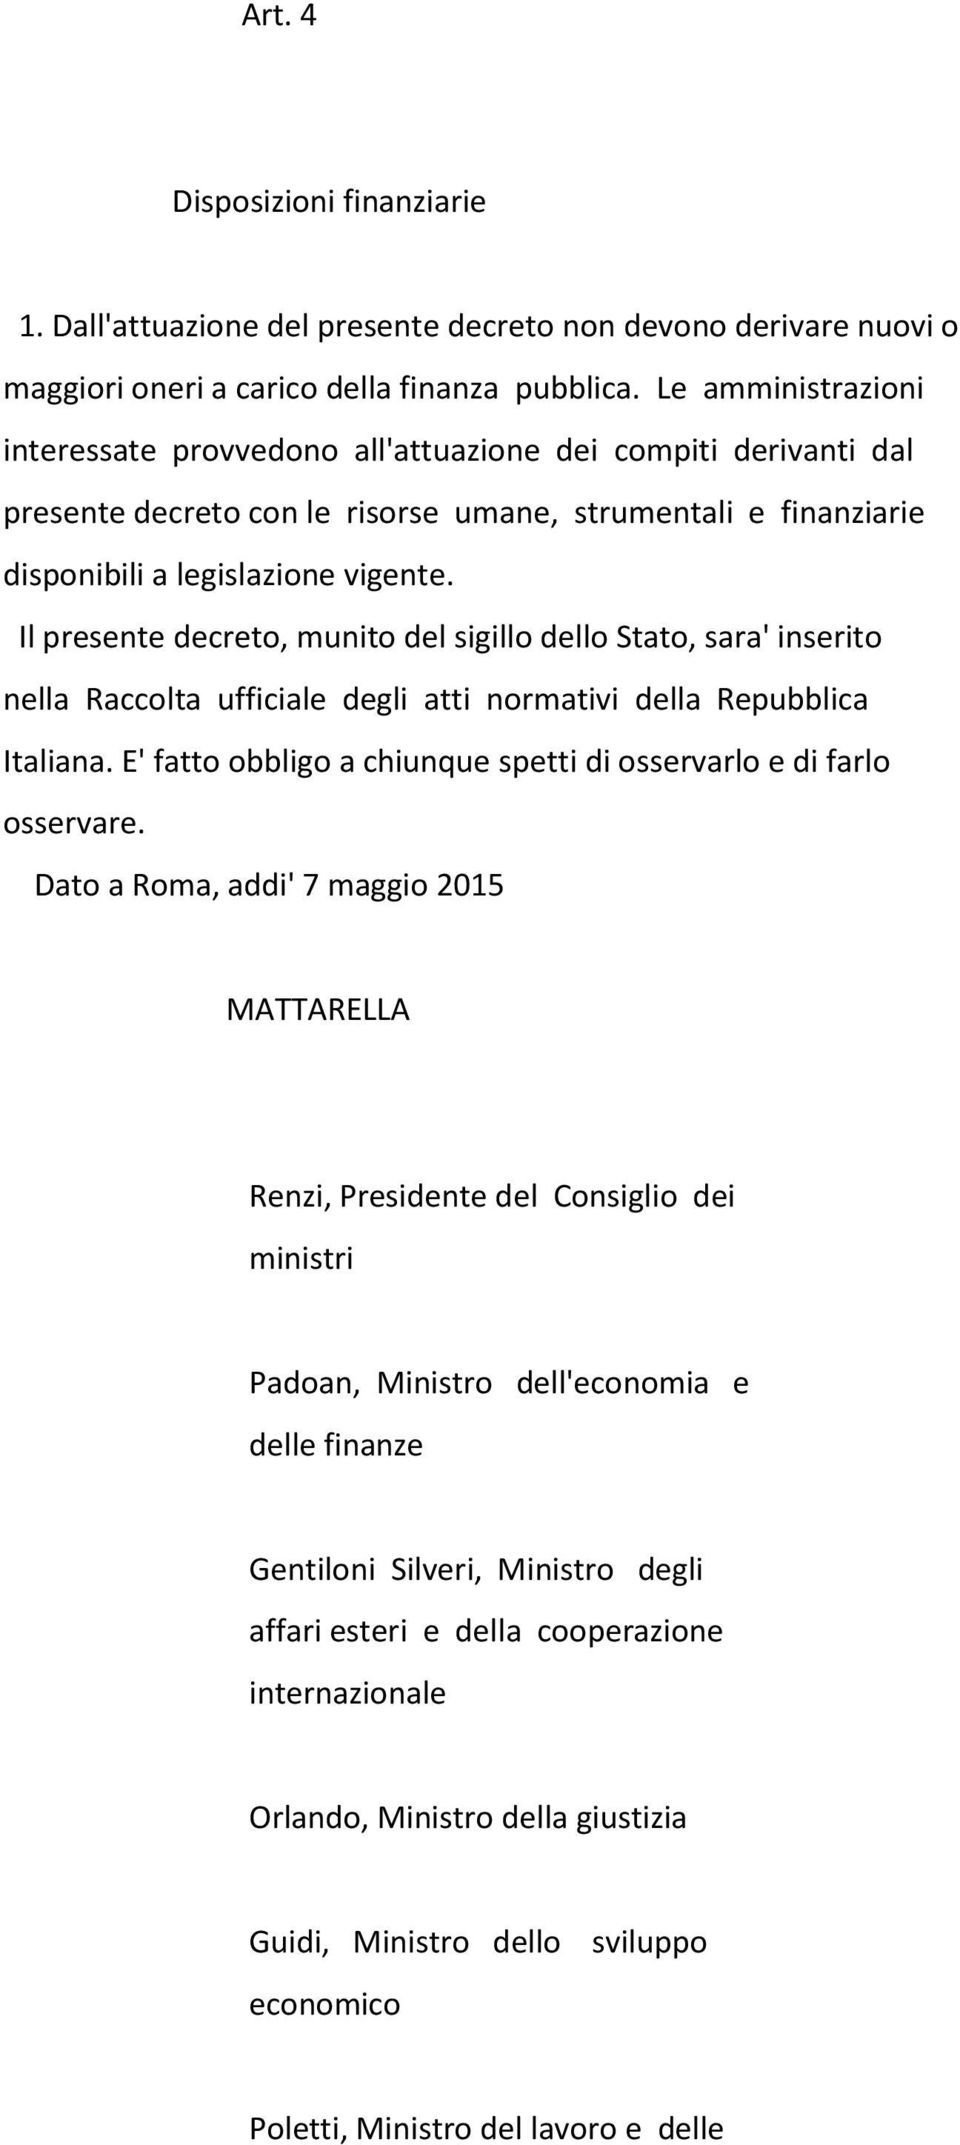 Il presente decreto, munito del sigillo dello Stato, sara' inserito nella Raccolta ufficiale degli atti normativi della Repubblica Italiana.